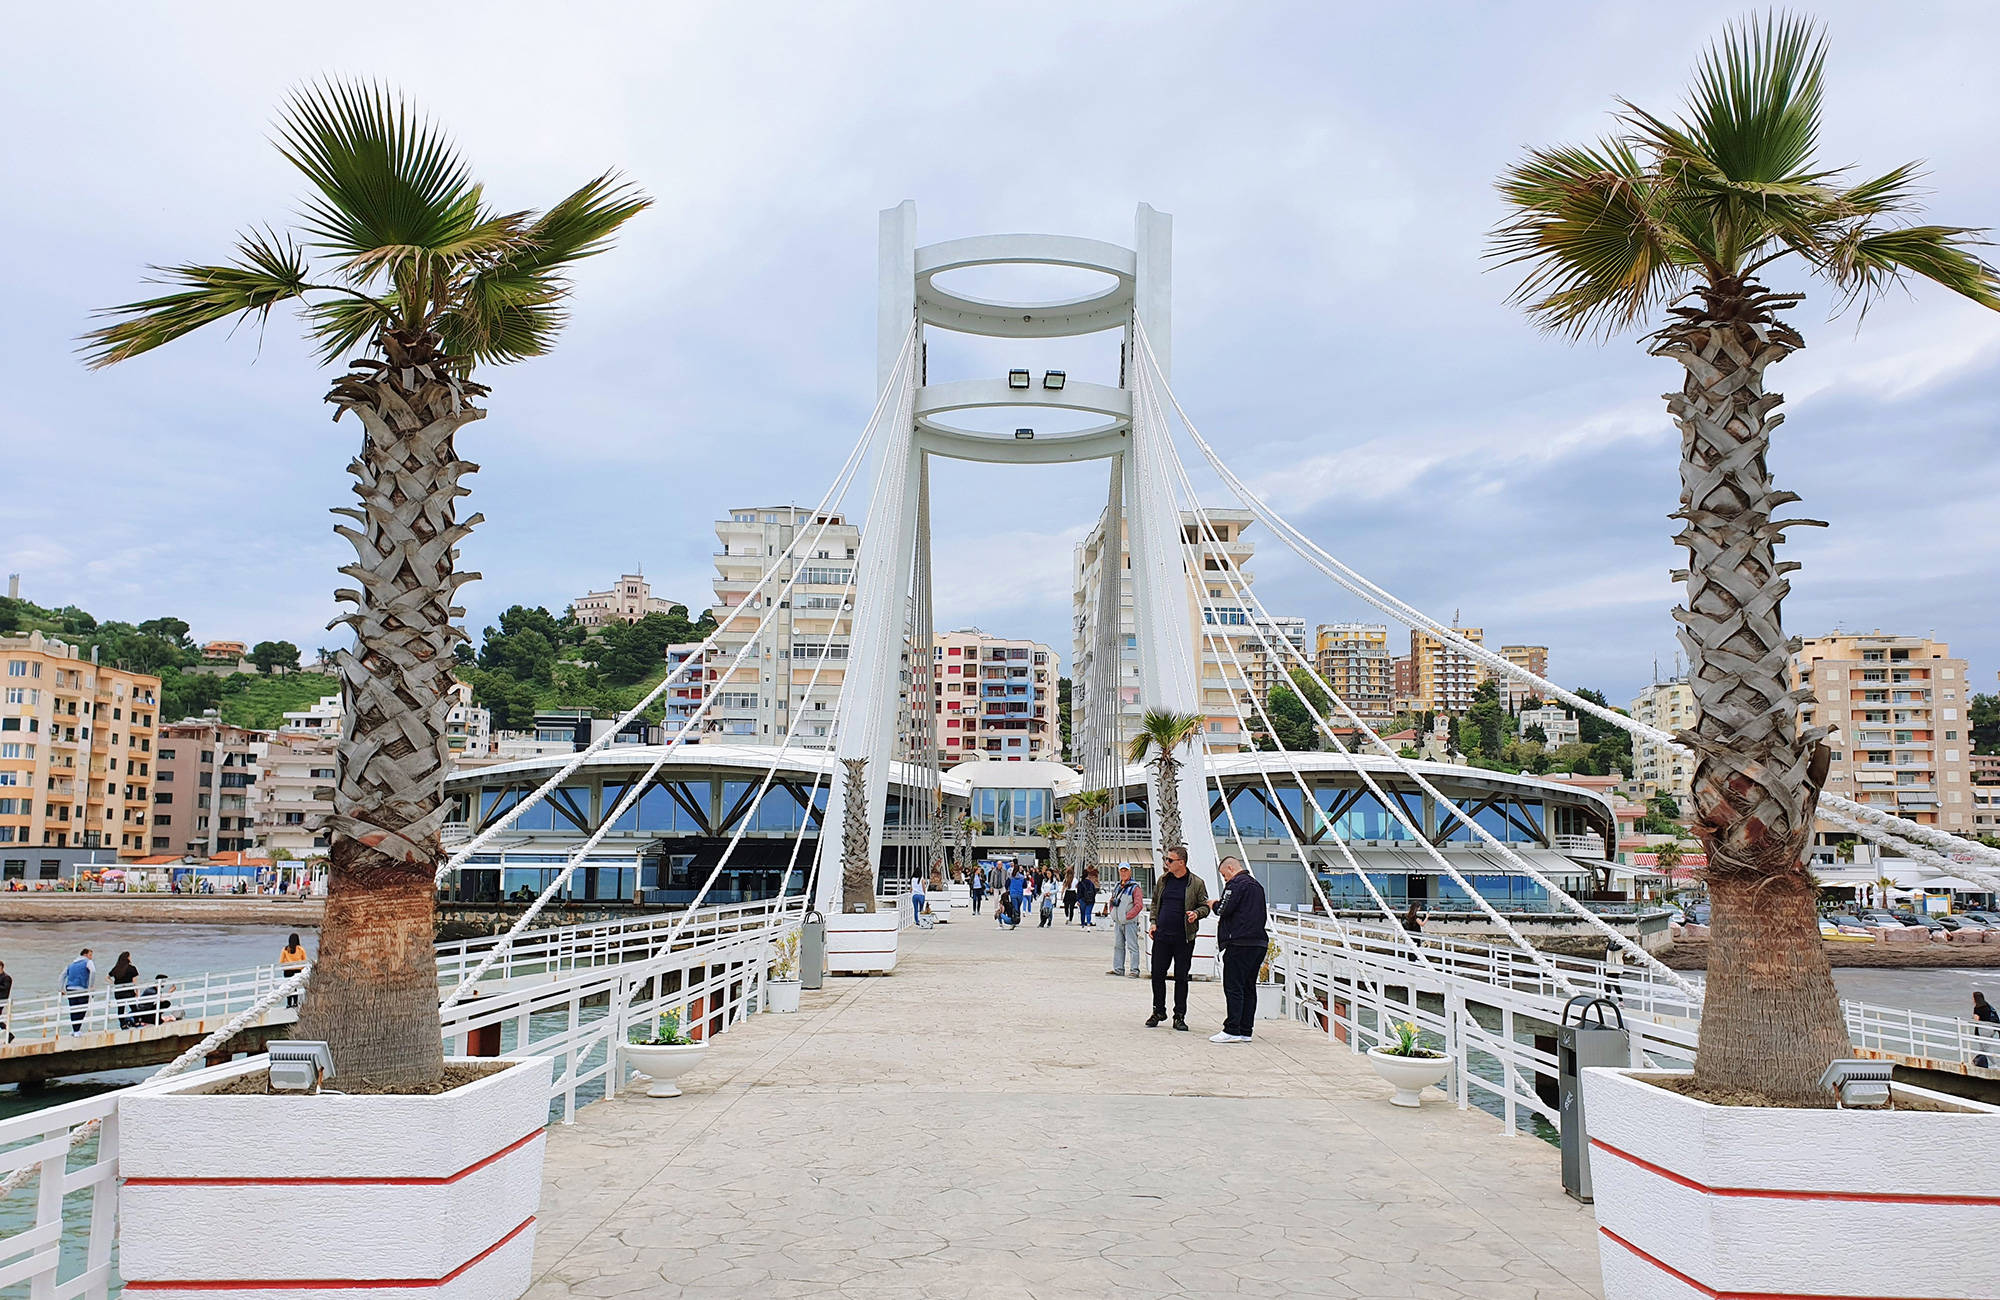 Stadsbrug in Albanië | Reizen naar de Balkan | KILROY